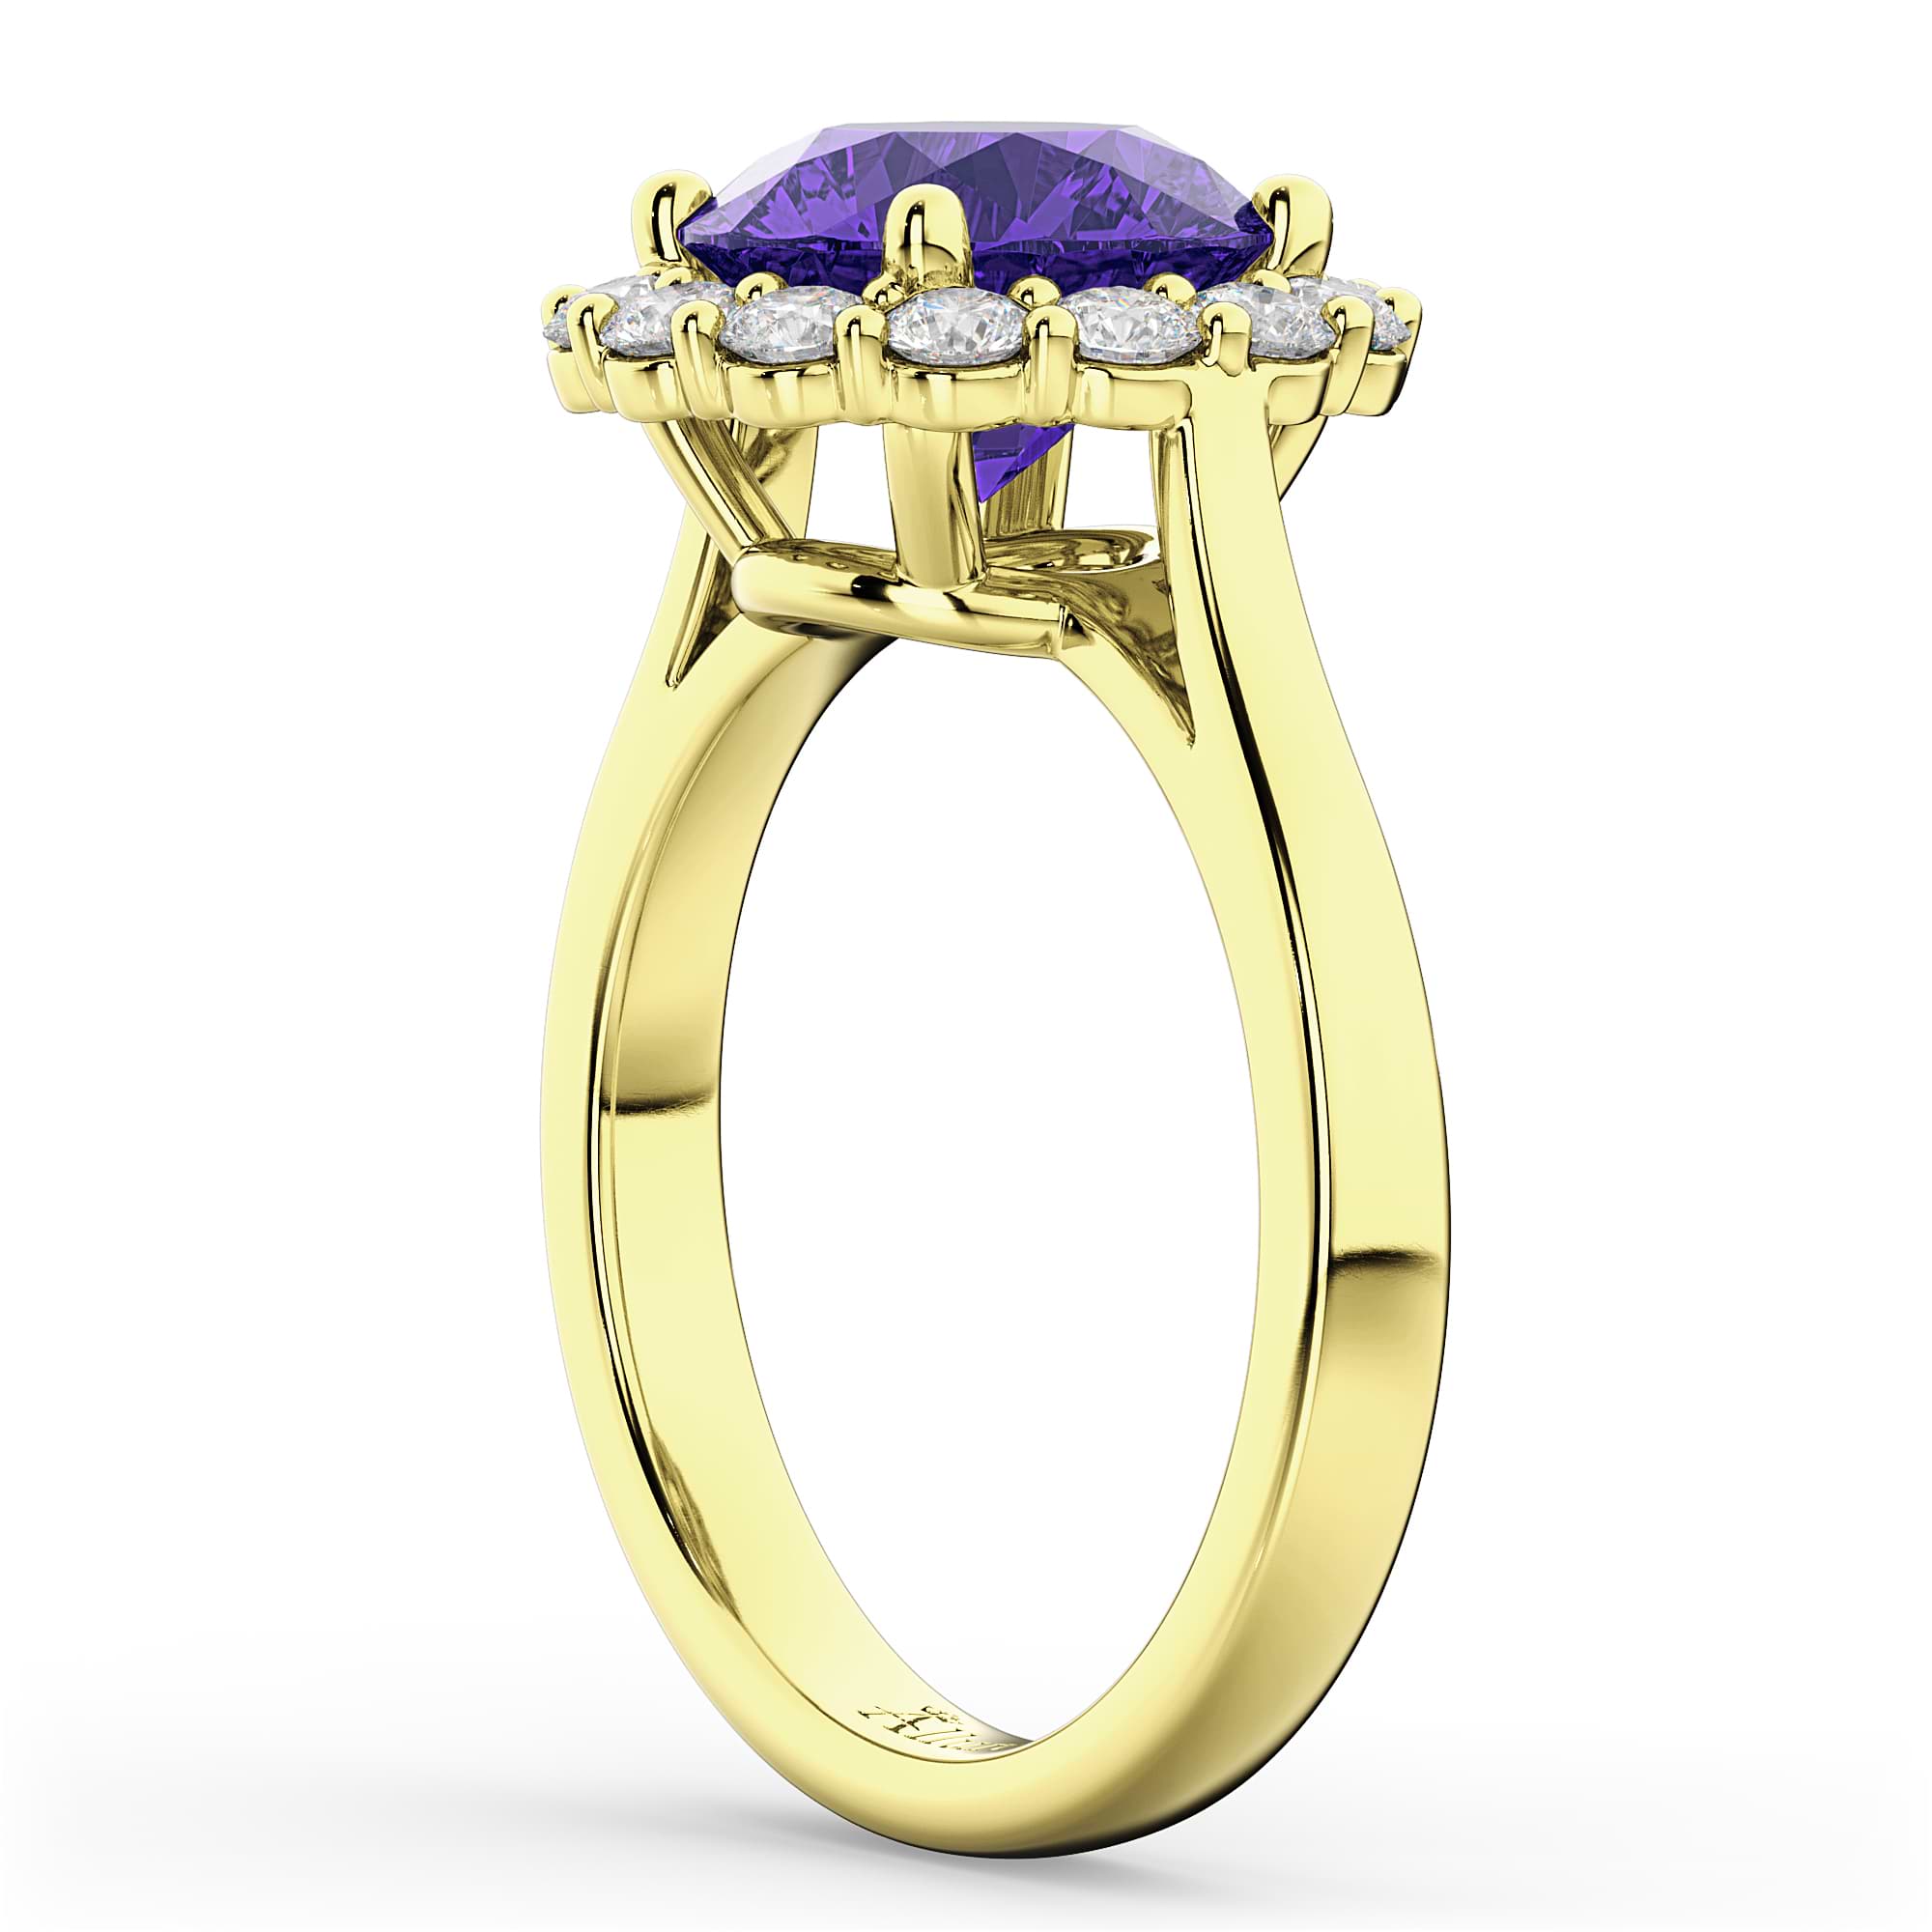 Halo Round Tanzanite & Diamond Engagement Ring 14K Yellow Gold 3.10ct